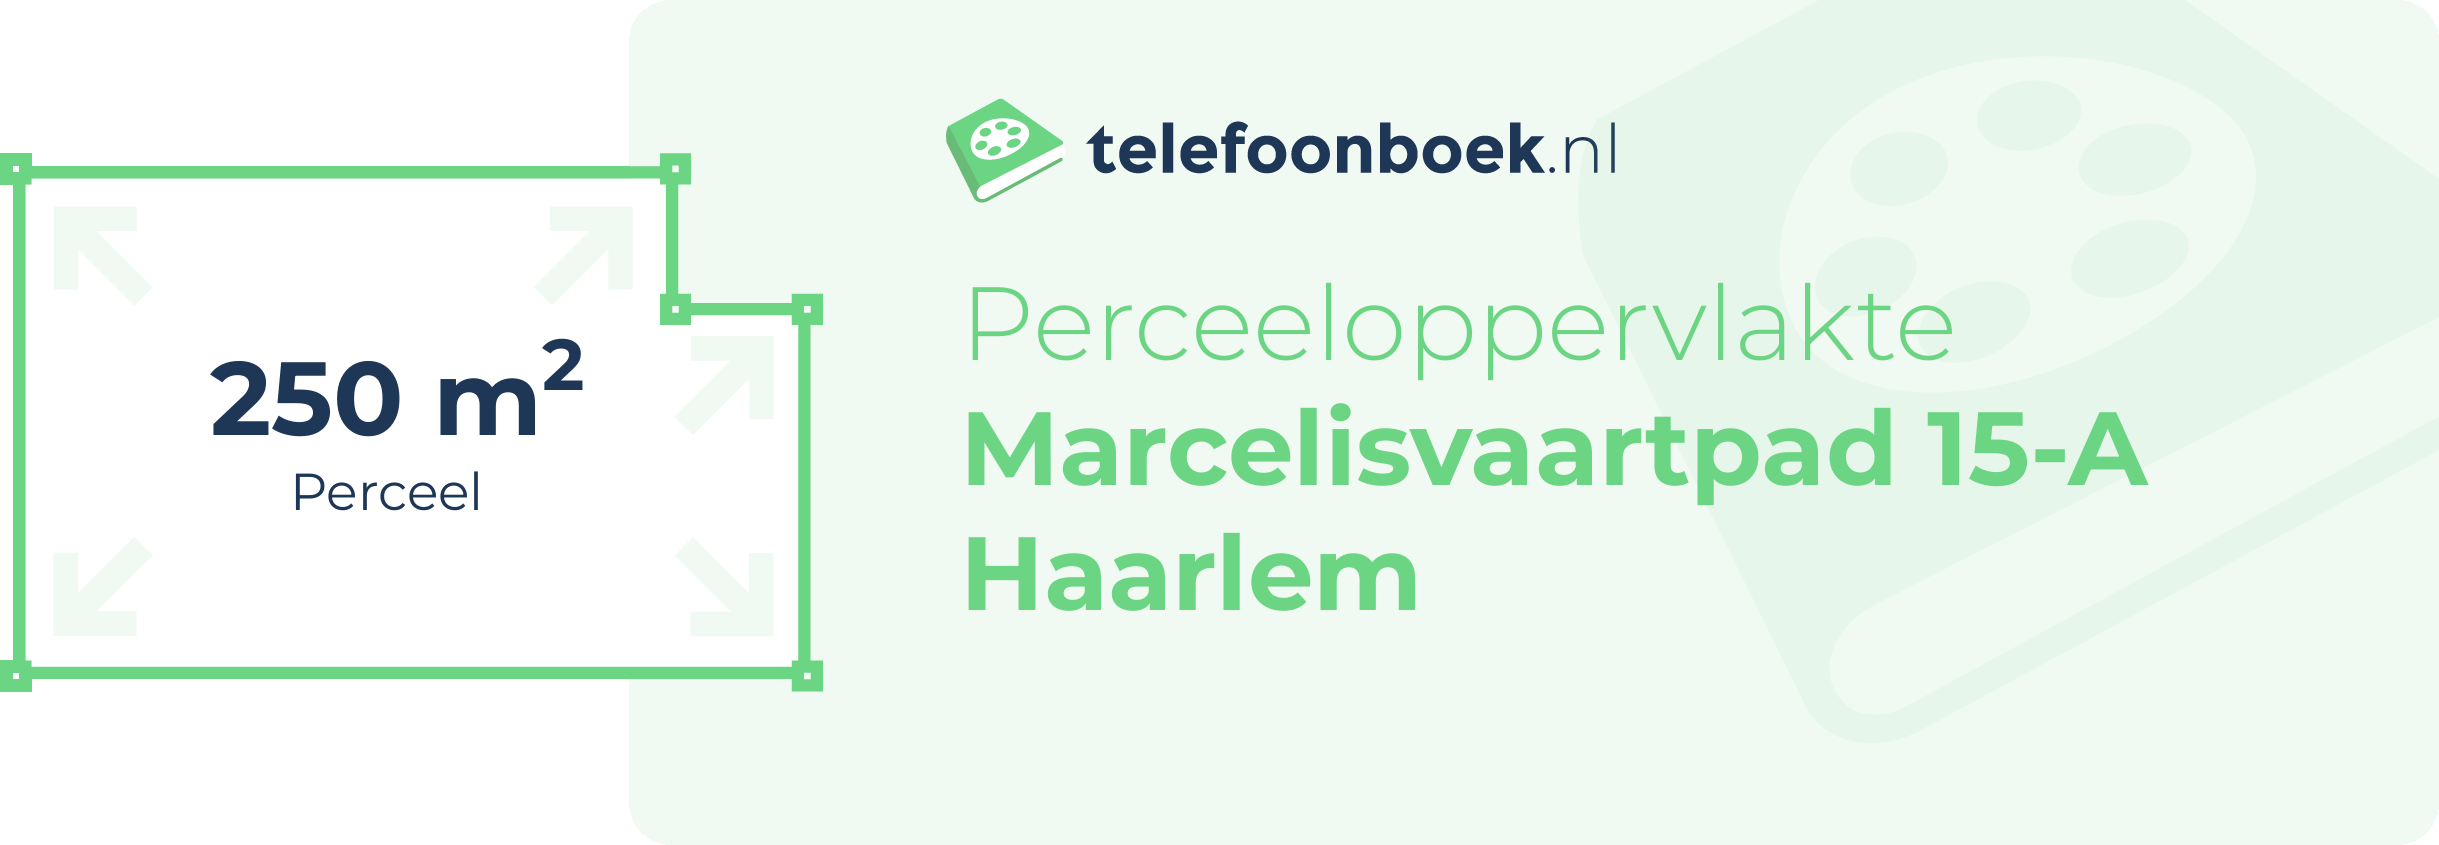 Perceeloppervlakte Marcelisvaartpad 15-A Haarlem